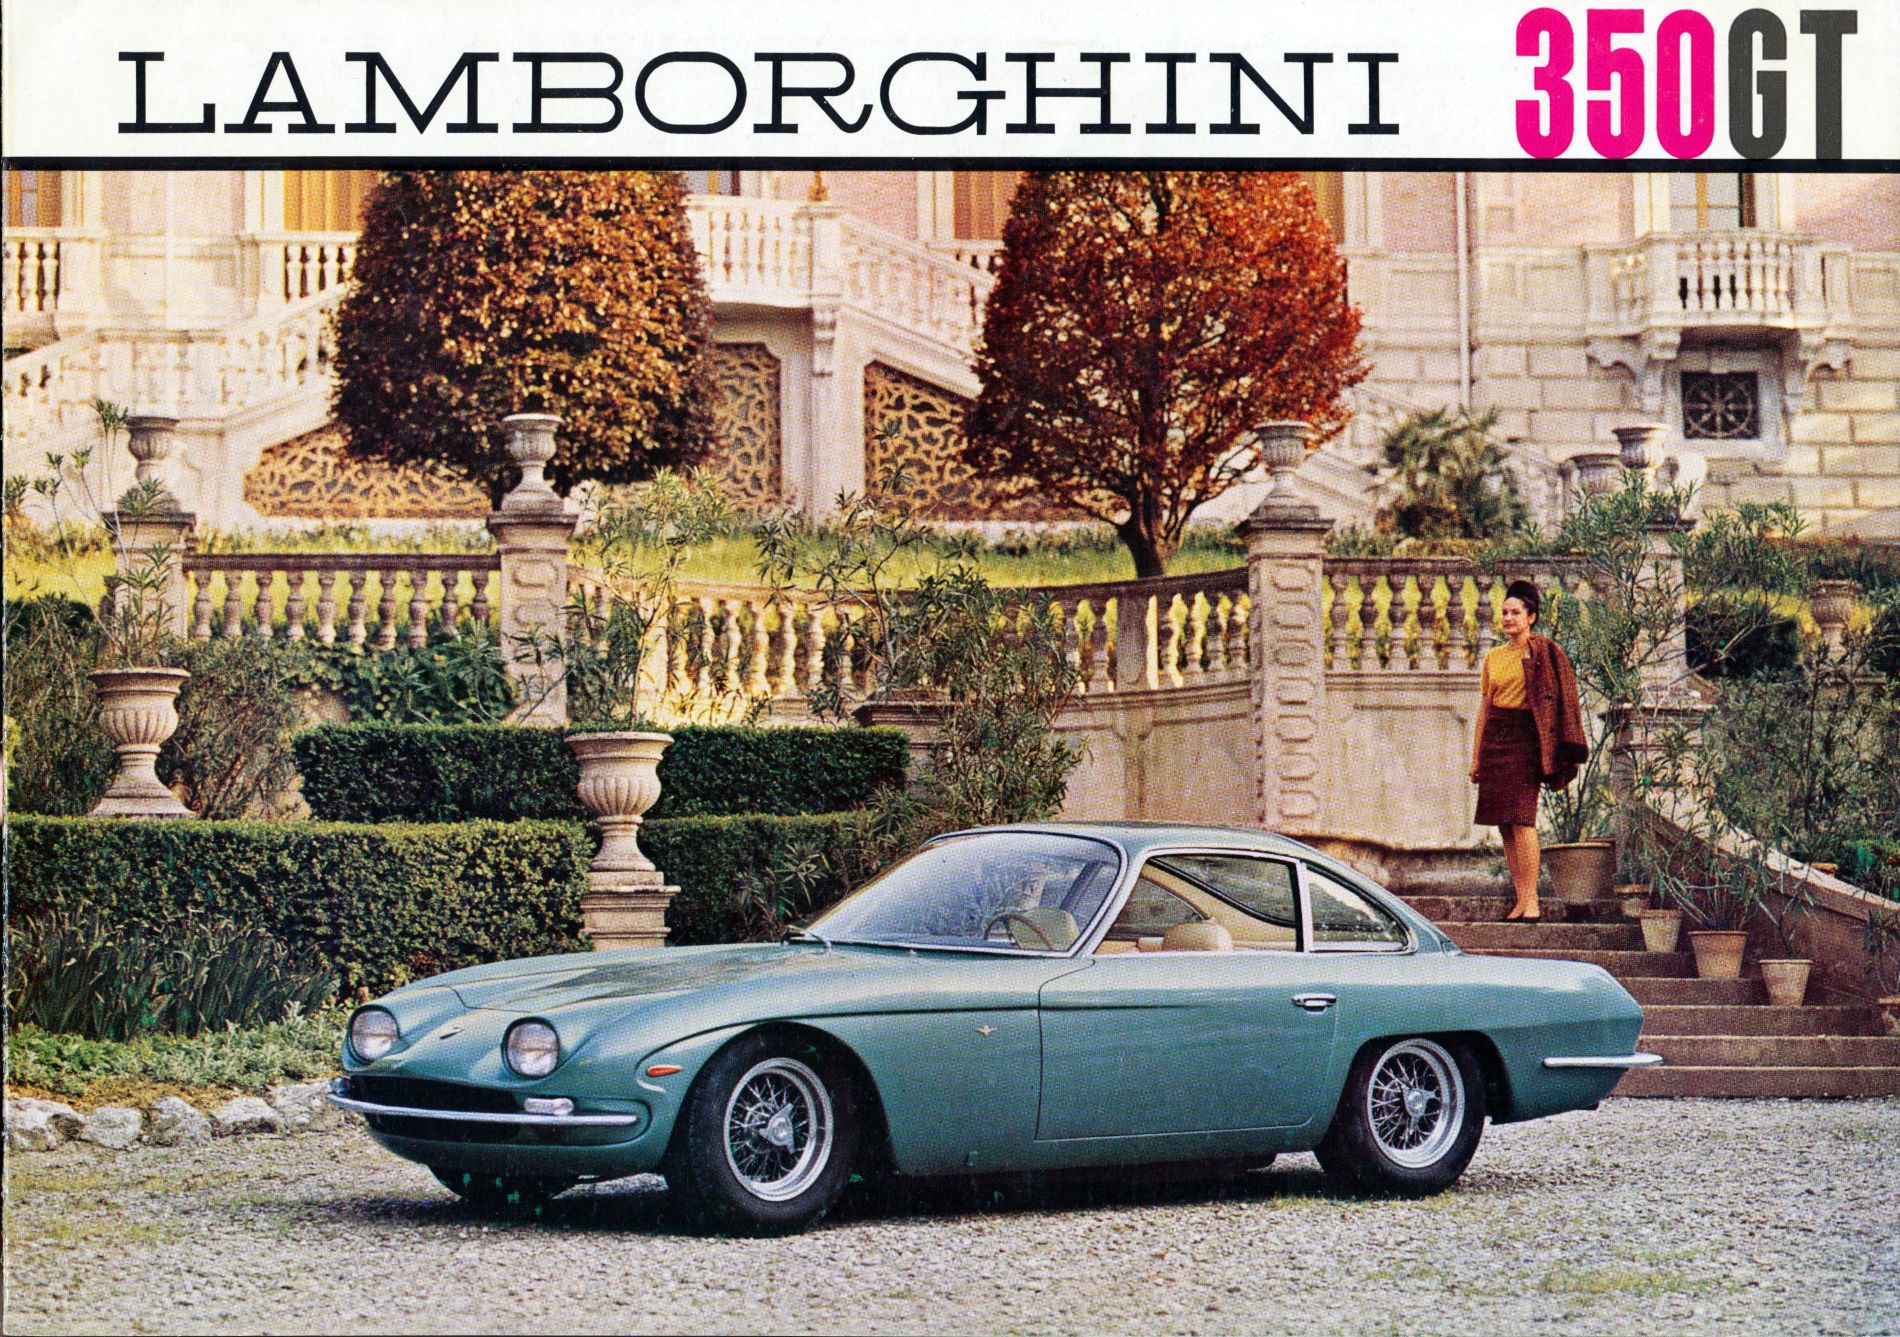 Lamborghini 350 GT brochure car brochure collector car brochure collection old car brochures best car brochure